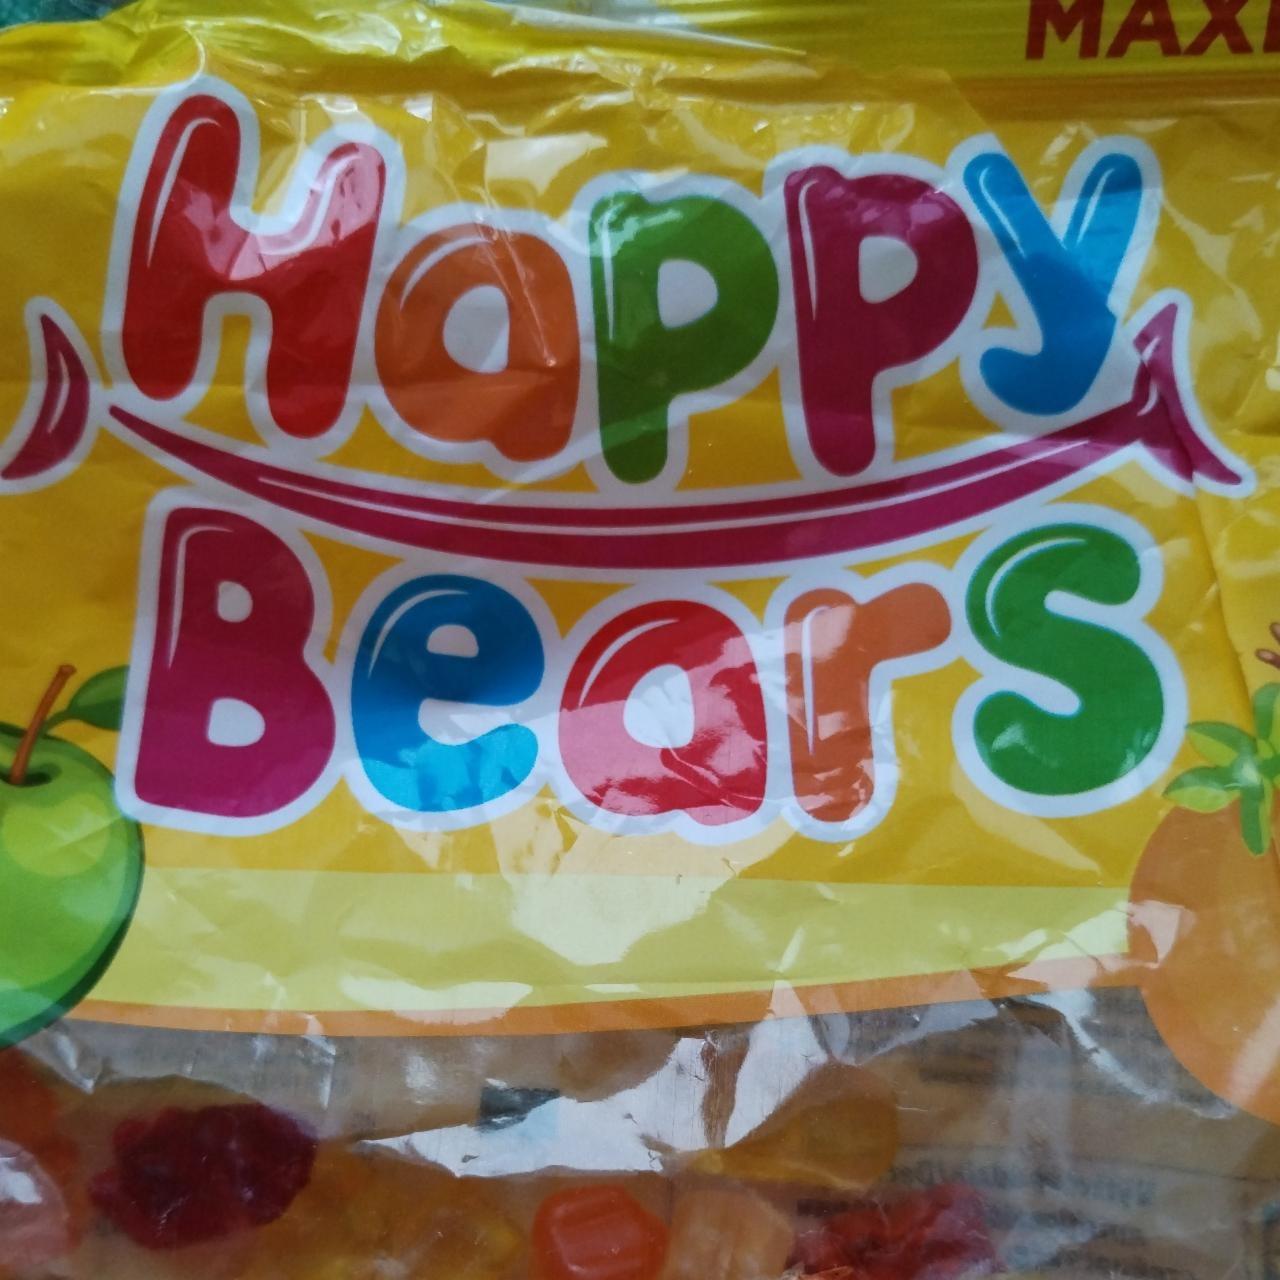 Képek - Happy Bears gumicukor Sweet corner